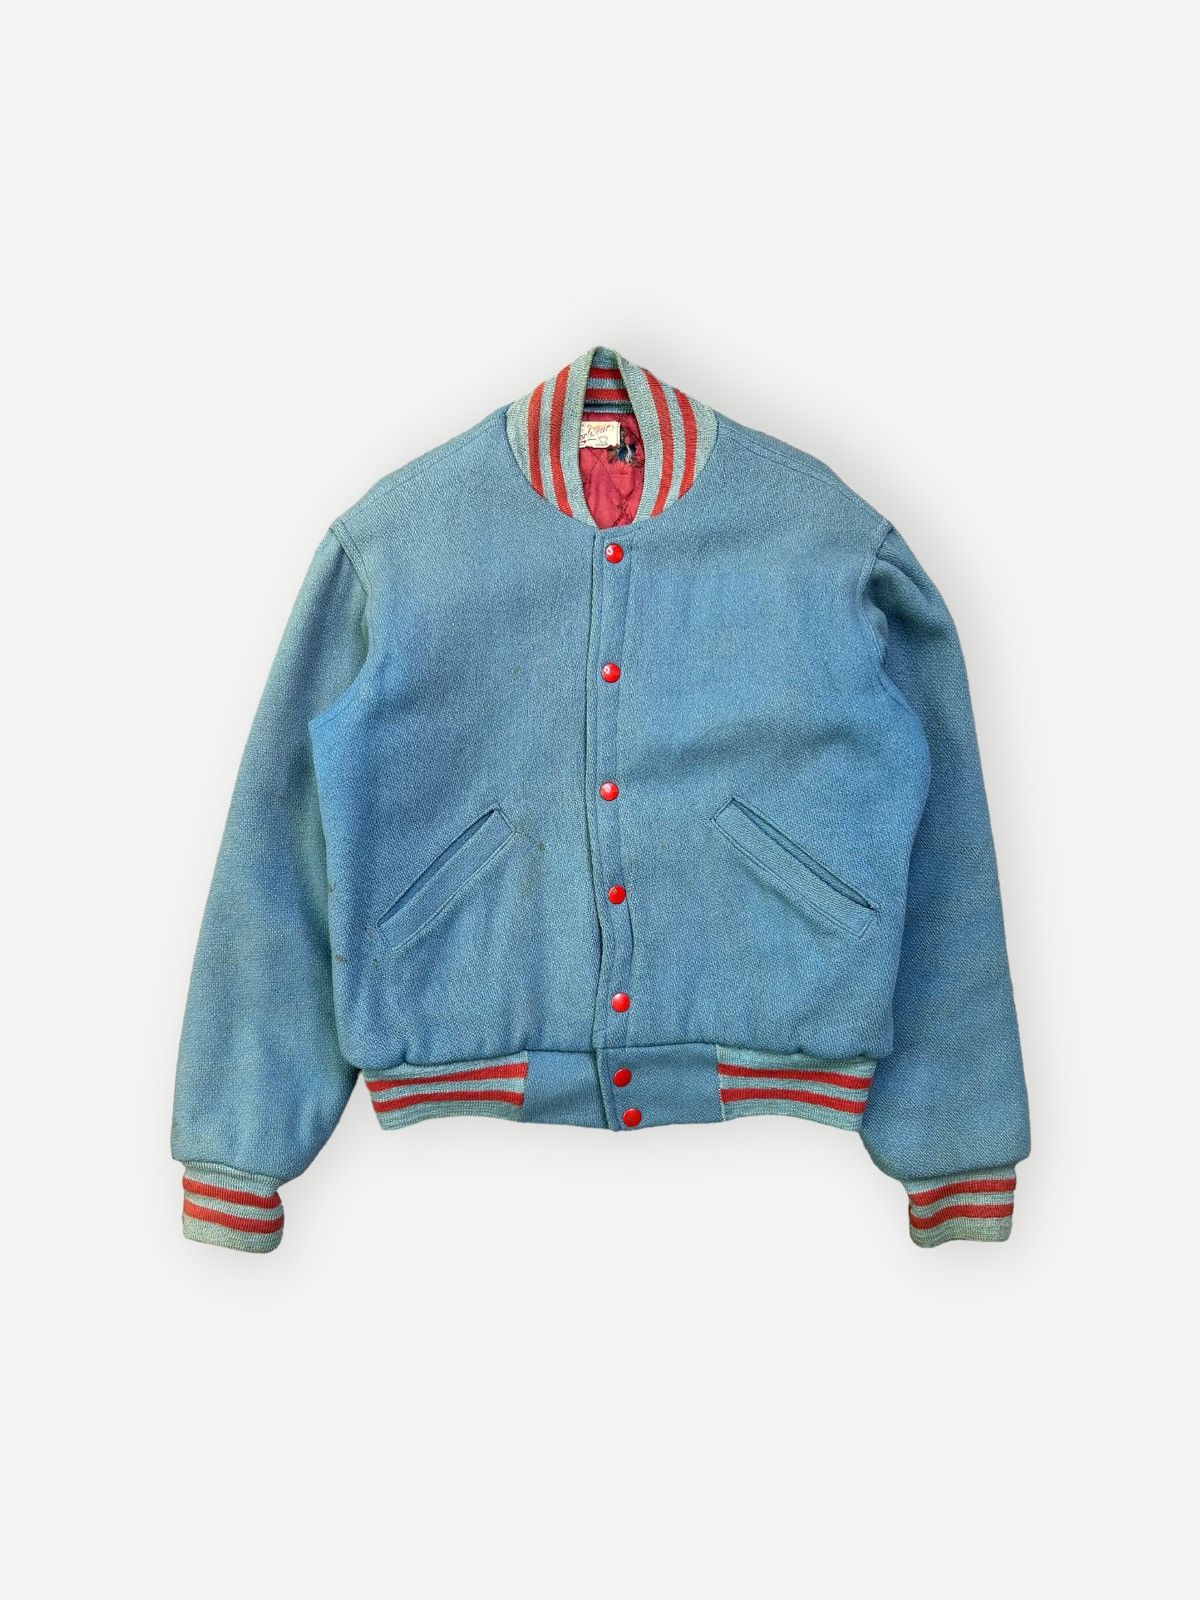 Vintage Vintage 50s/60s Wool Varsity Jacket Quilted Sportwear ...